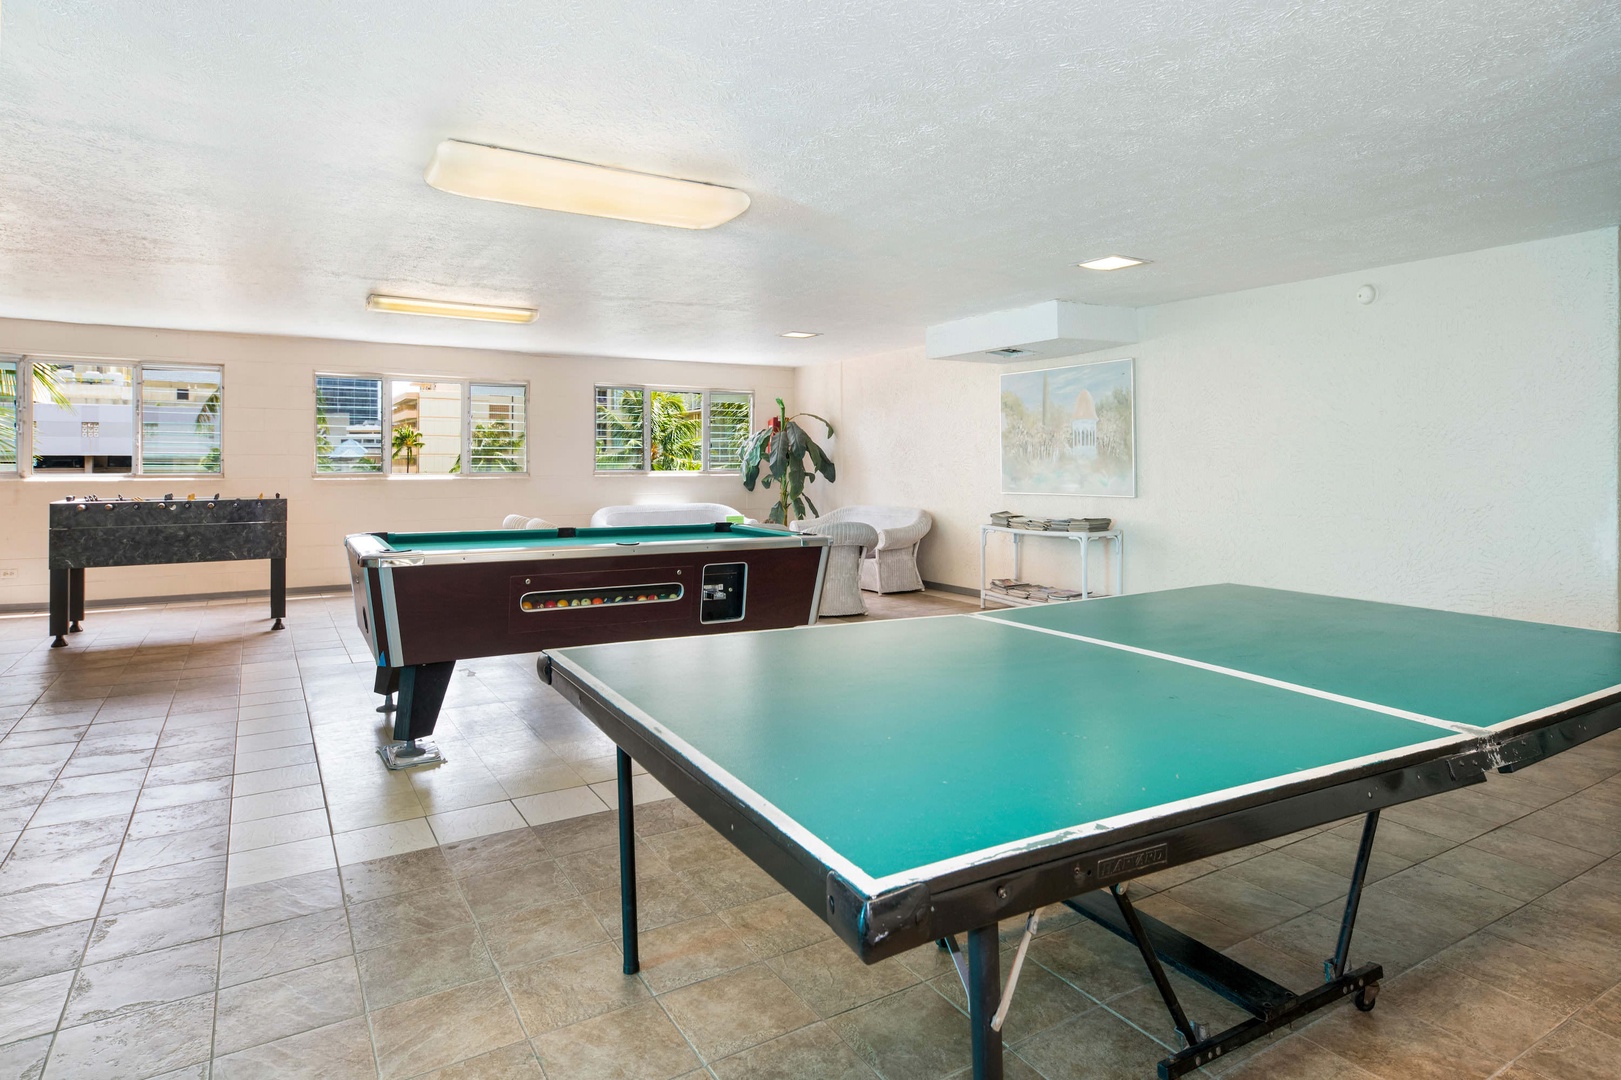 Aloha Lani game room w/ ping pong table and pool table